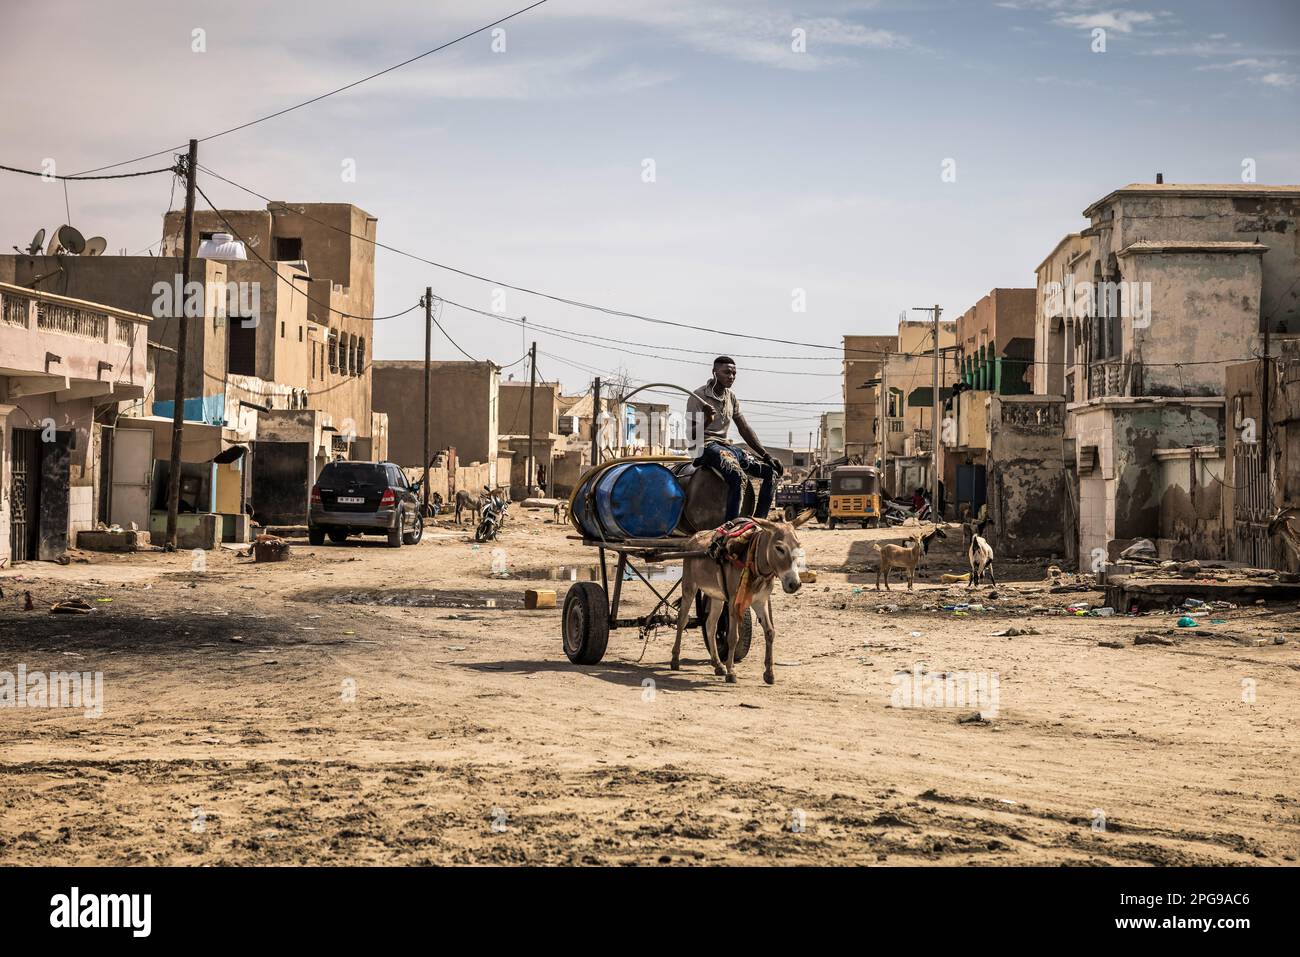 Traditionelle und einfache Menschen leben jeden Tag in den ärmeren Vierteln der Hauptstadt in Nouakshott Mauretanien. Stockfoto